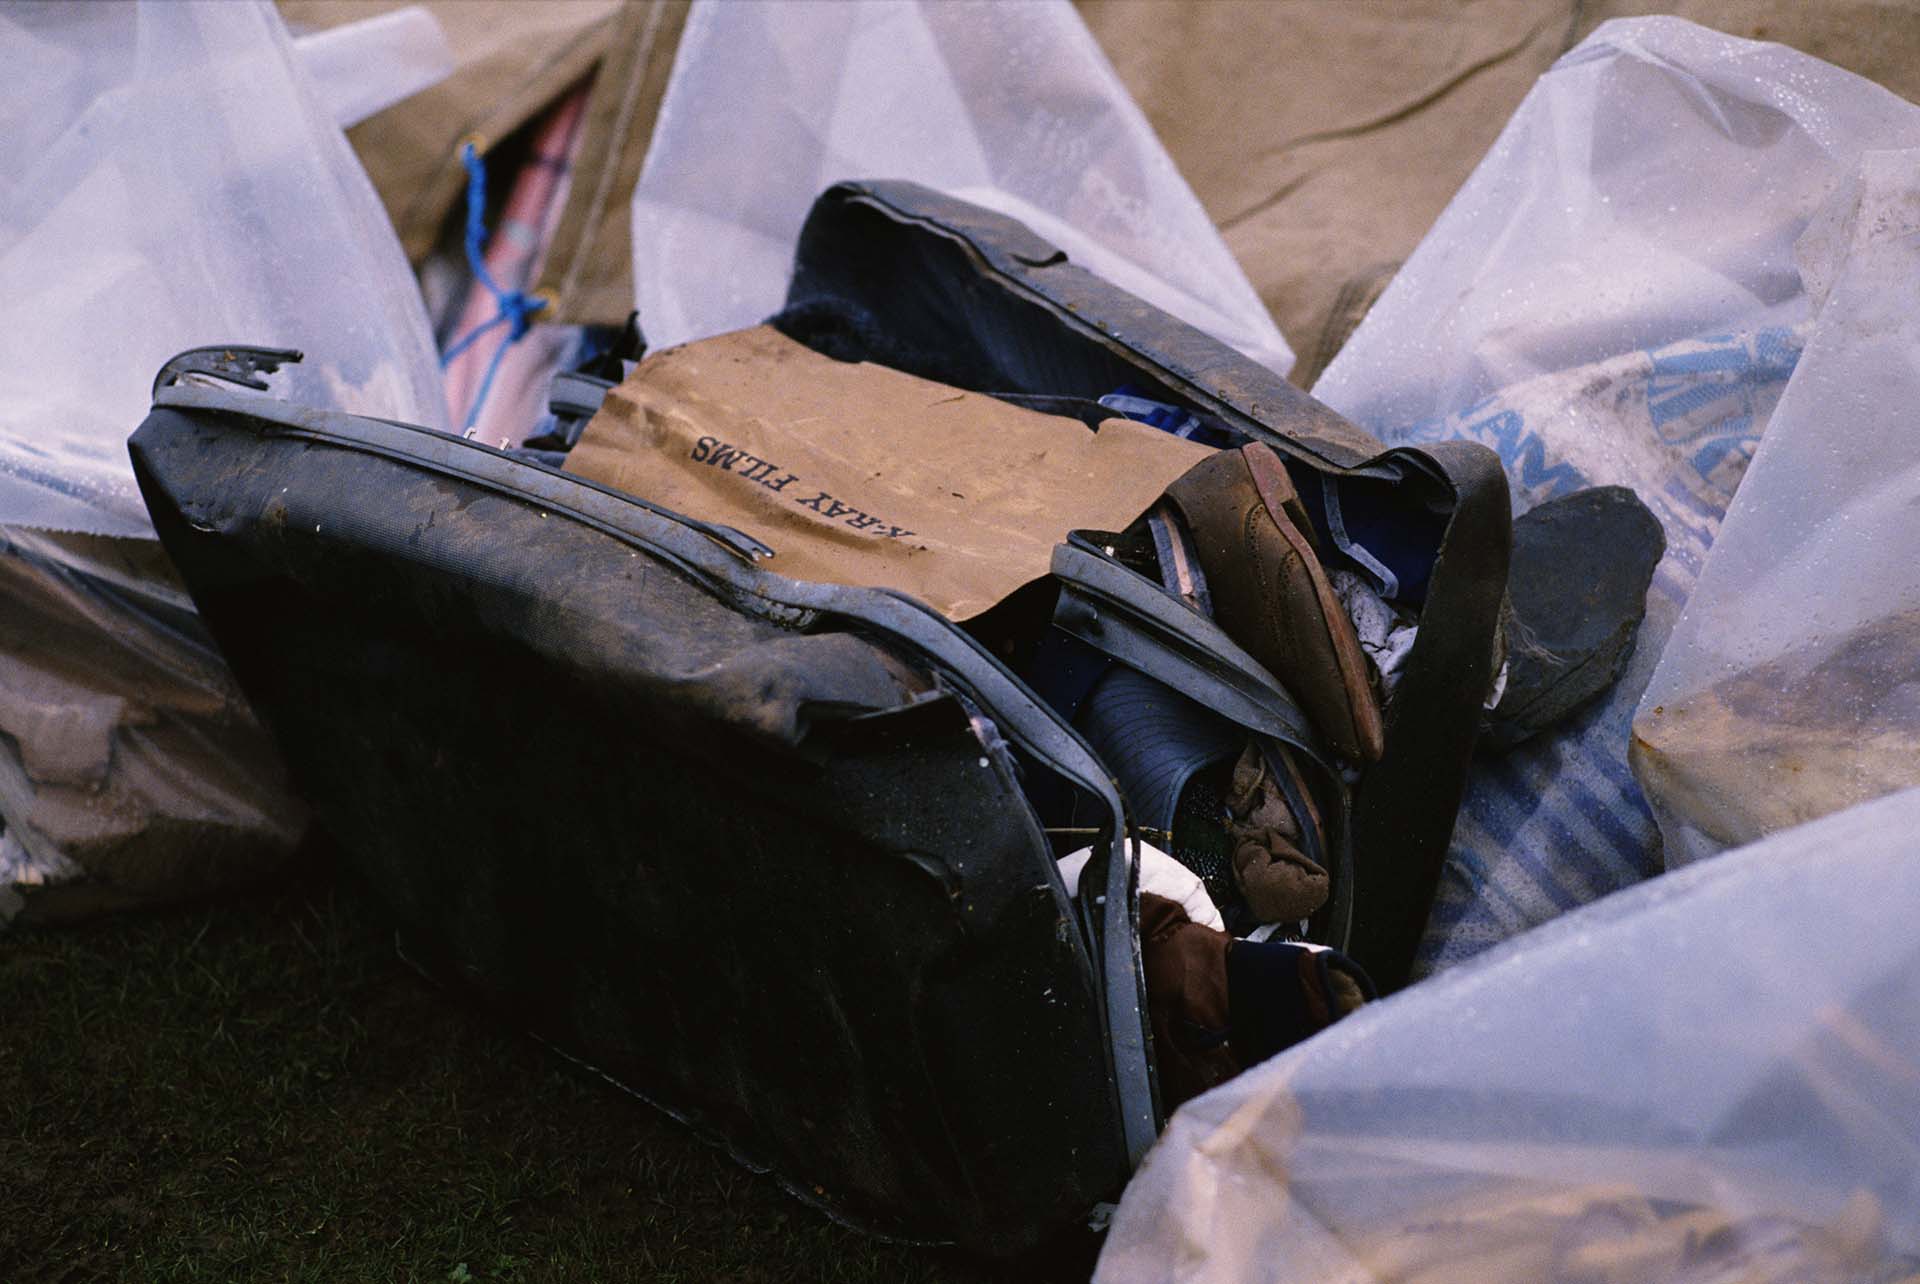 Una valija rota hallada entre los restos del avión de Pan Am. Se puede leer un papel que dice "películas de rayos X" (Photo by Bryn Colton/Getty Images)